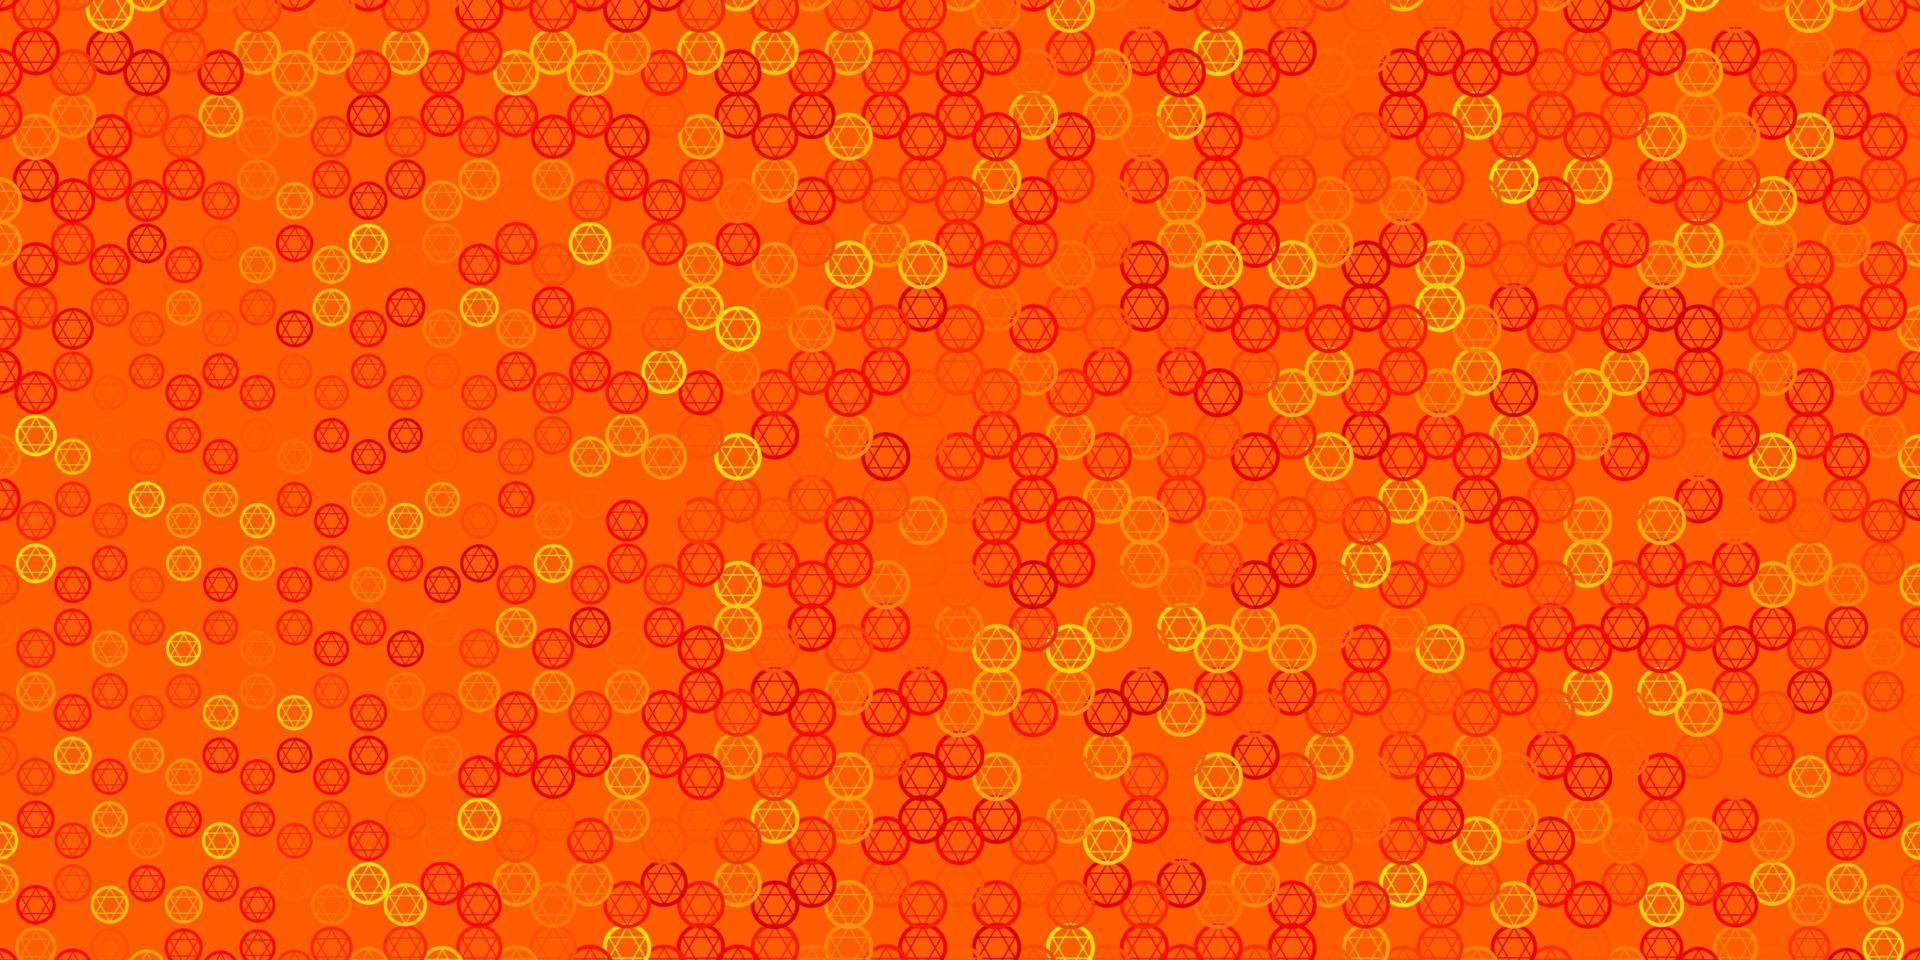 sfondo vettoriale arancione chiaro con simboli misteriosi.